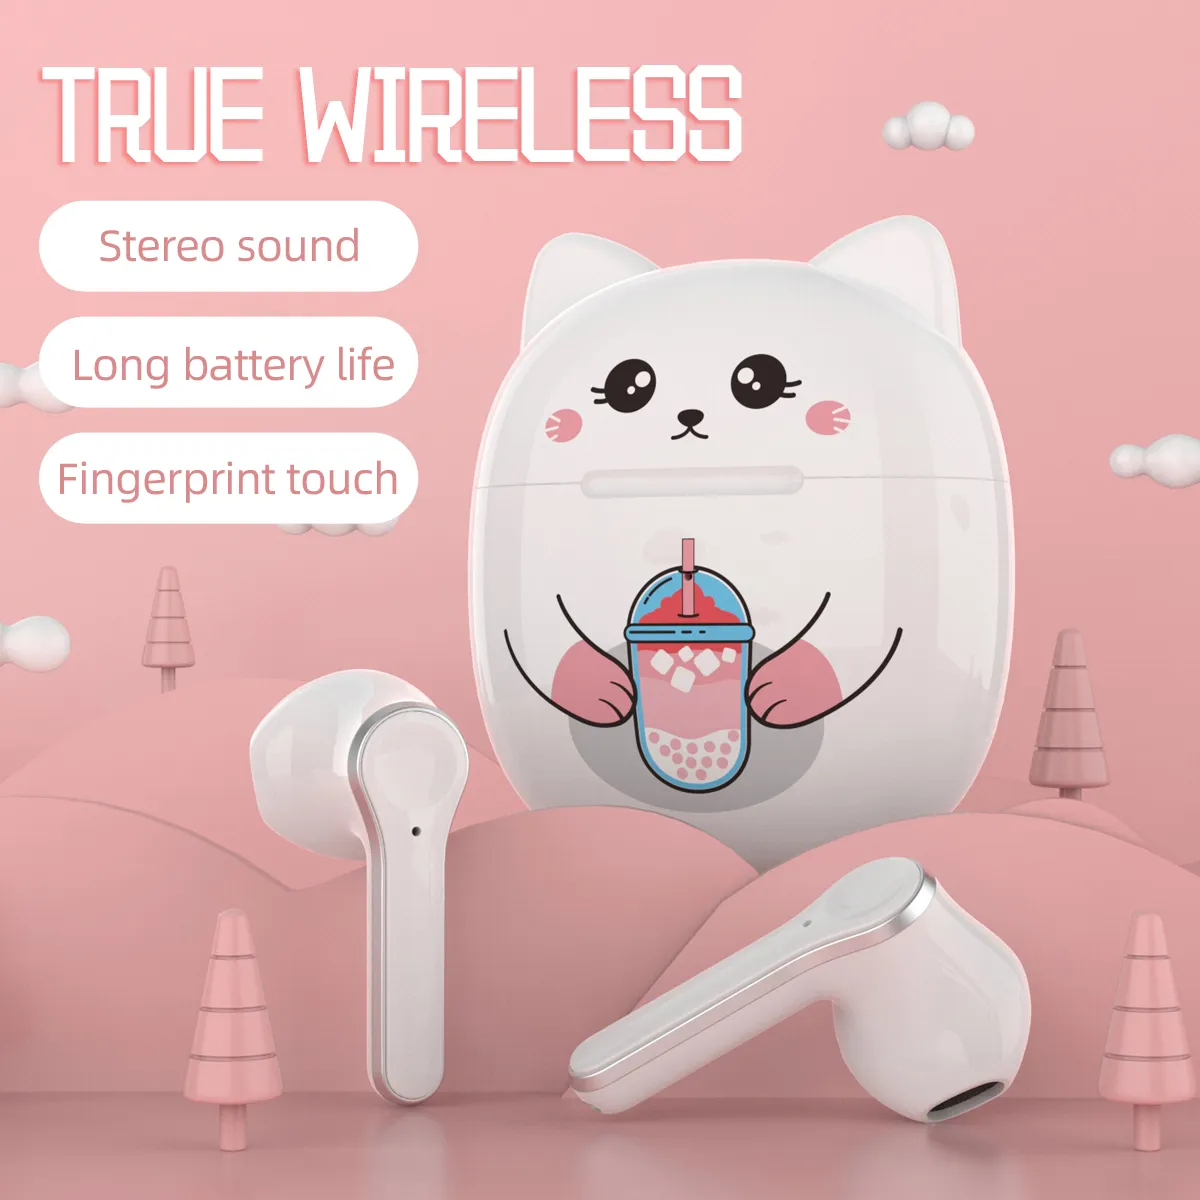 T18a draadloze Bluetooth-headset schattige kat twee-oor muziek oordopje oortje met oplaadetui hoofdtelefoon pak voor smartphone mobiele telefoon meisjes hoofdtelefoon